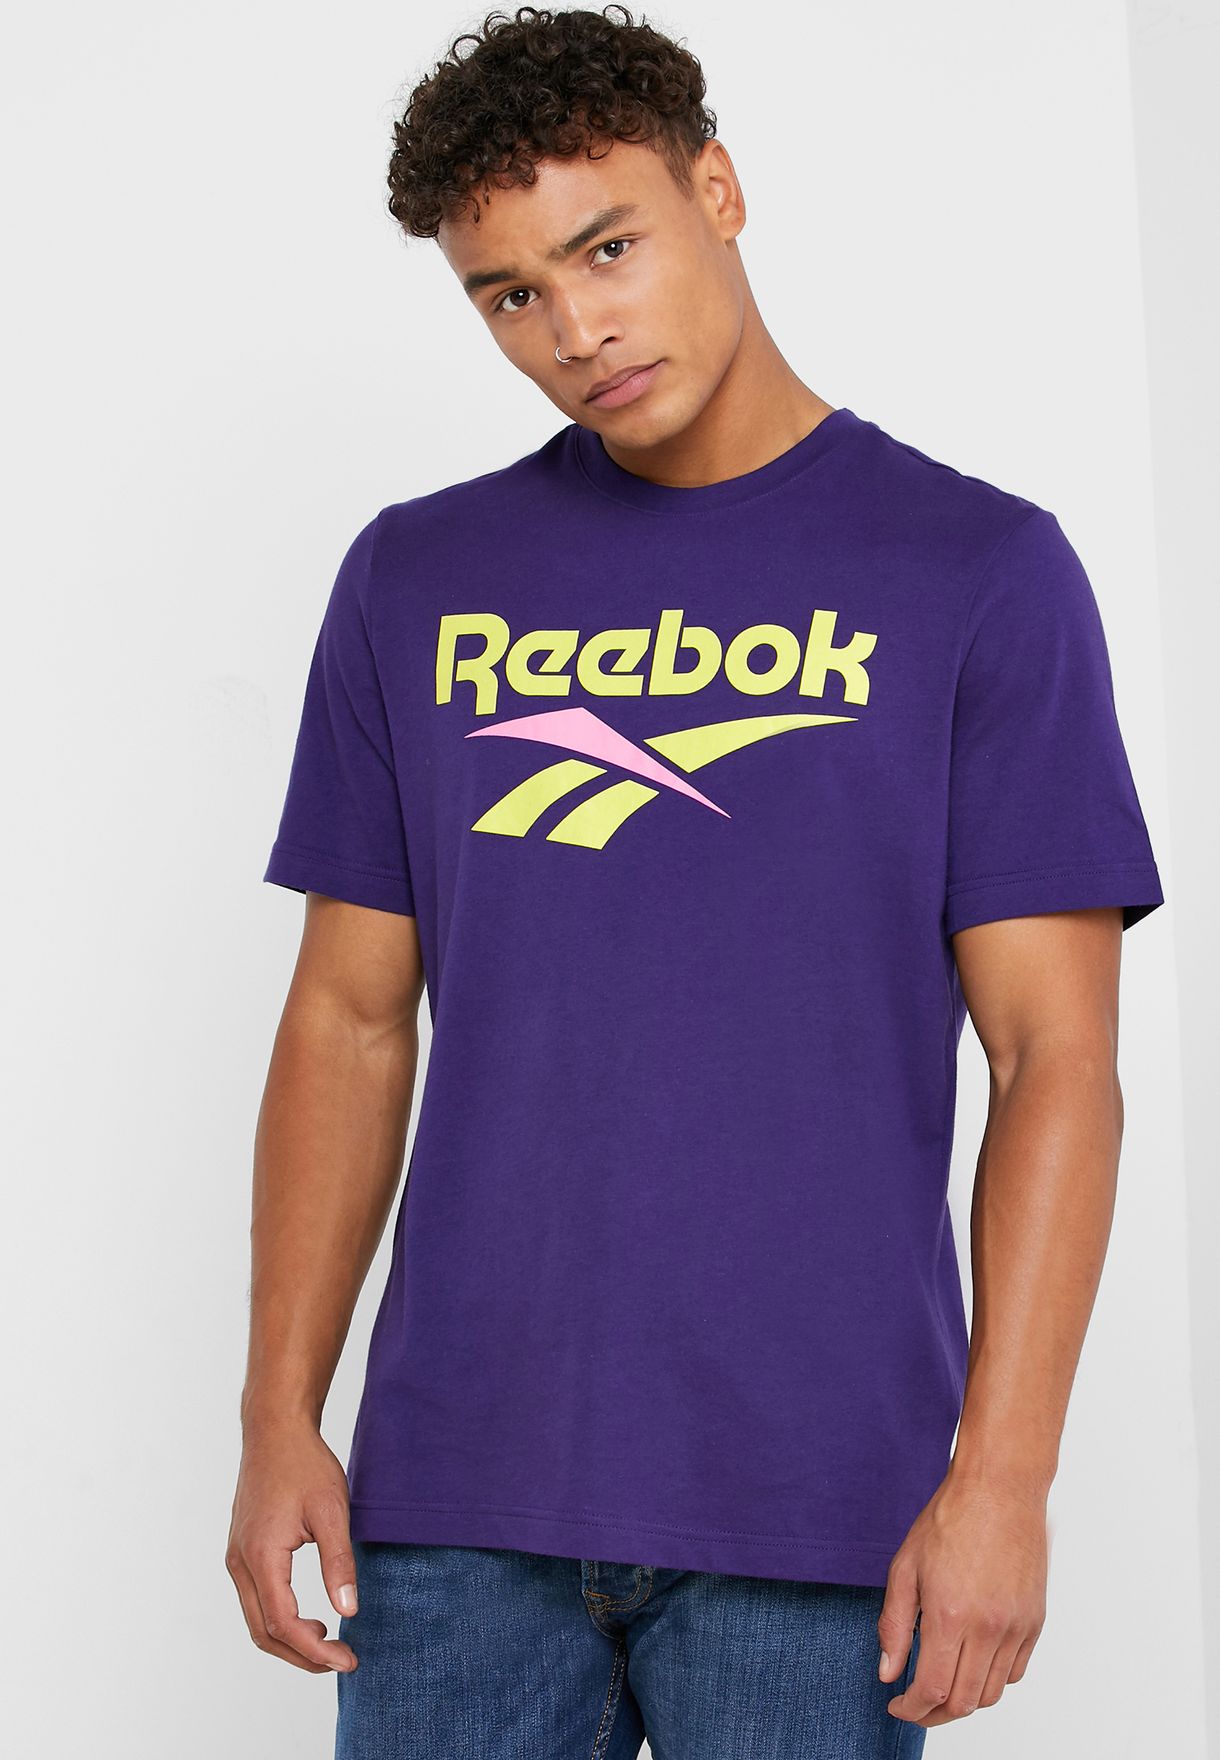 purple reebok shirt